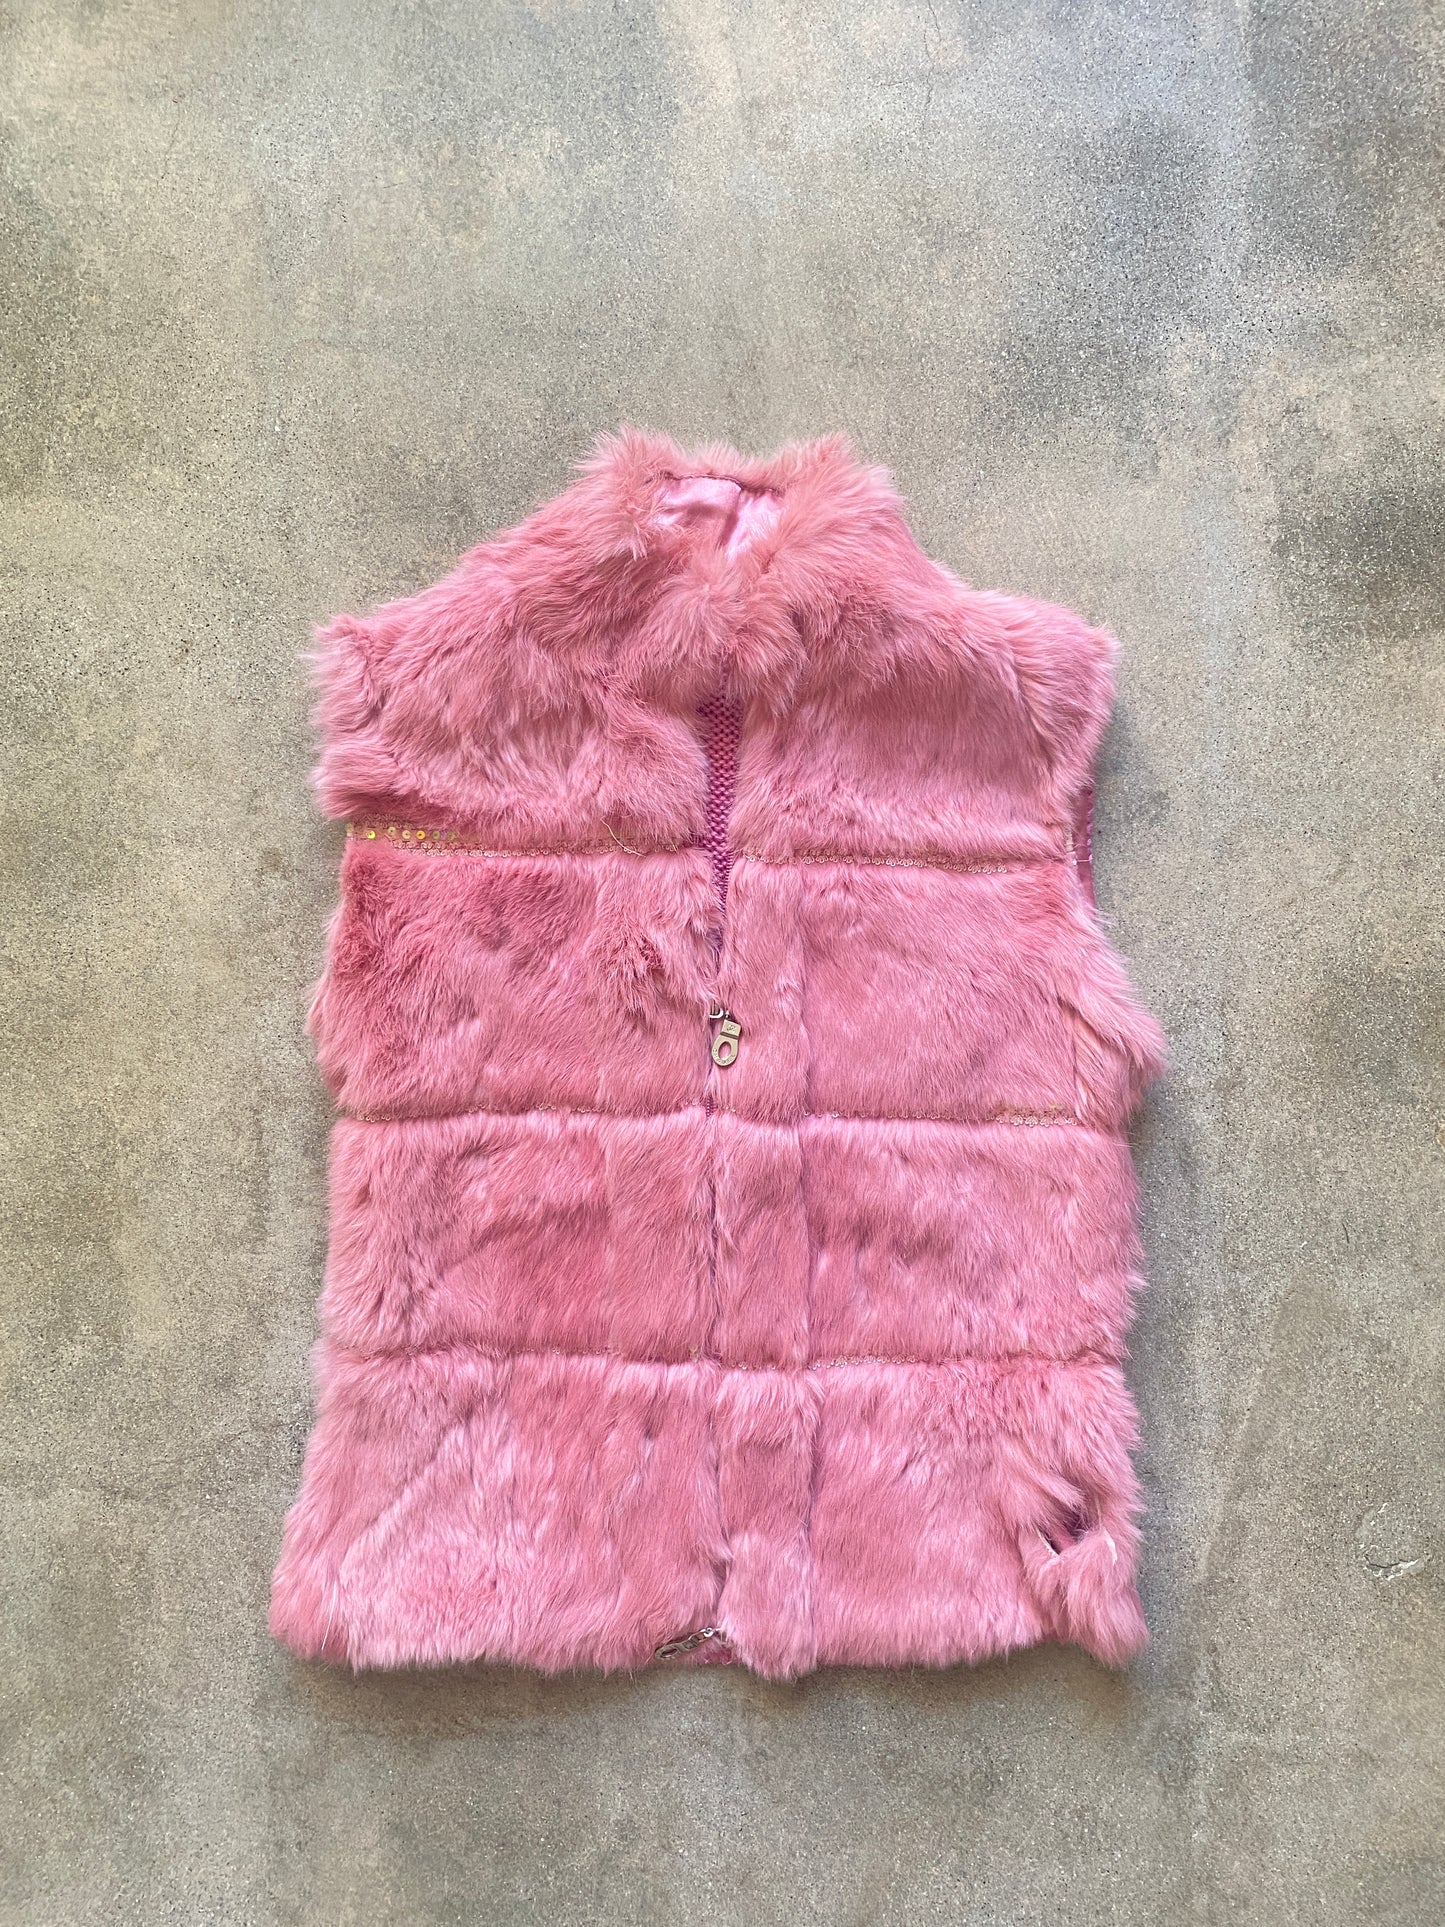 00's Furry Knit Vest